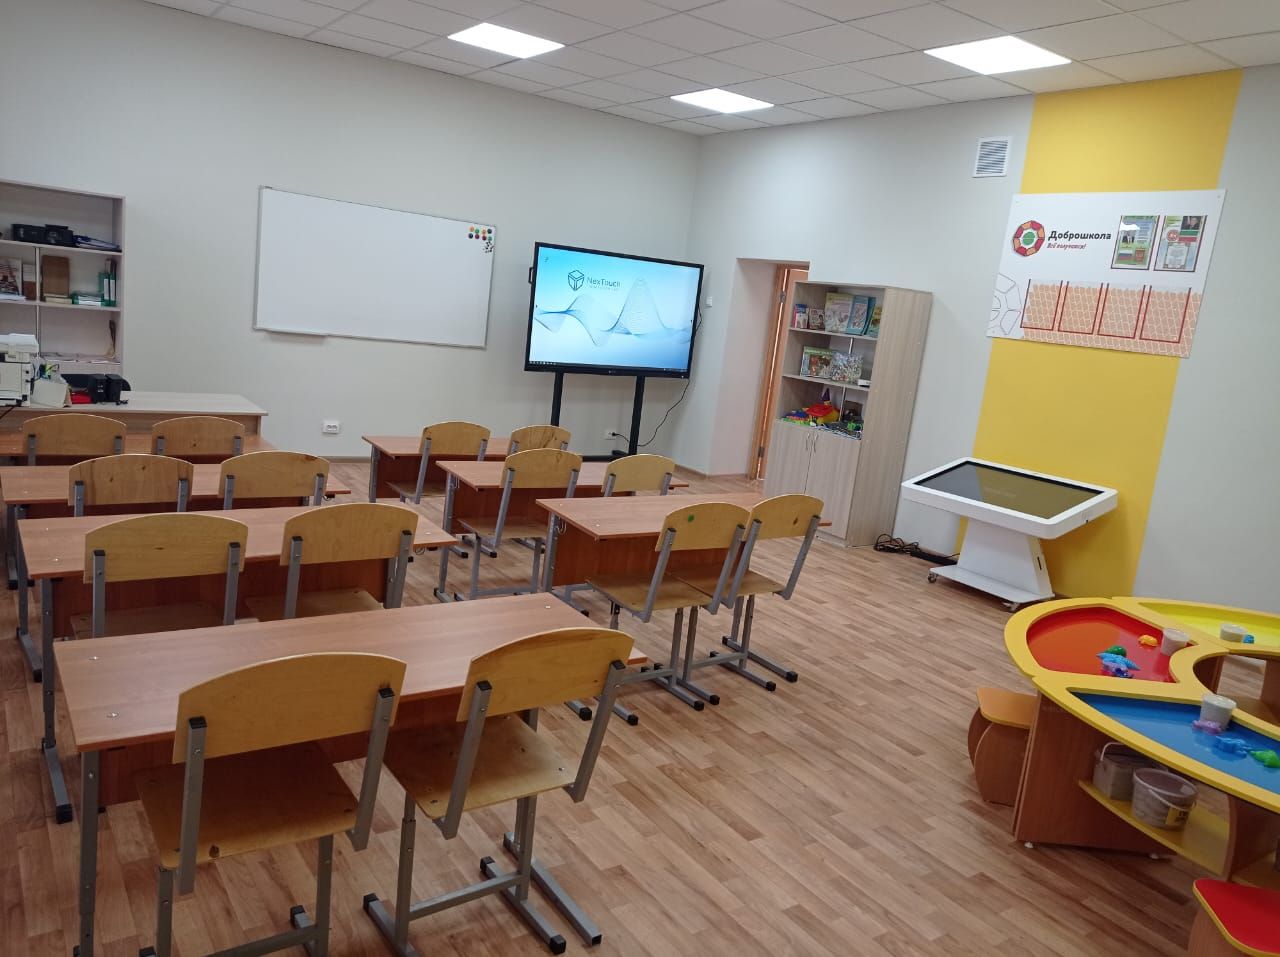 Заинская школа №9 преобразилась благодаря проекту «Доброшкола»